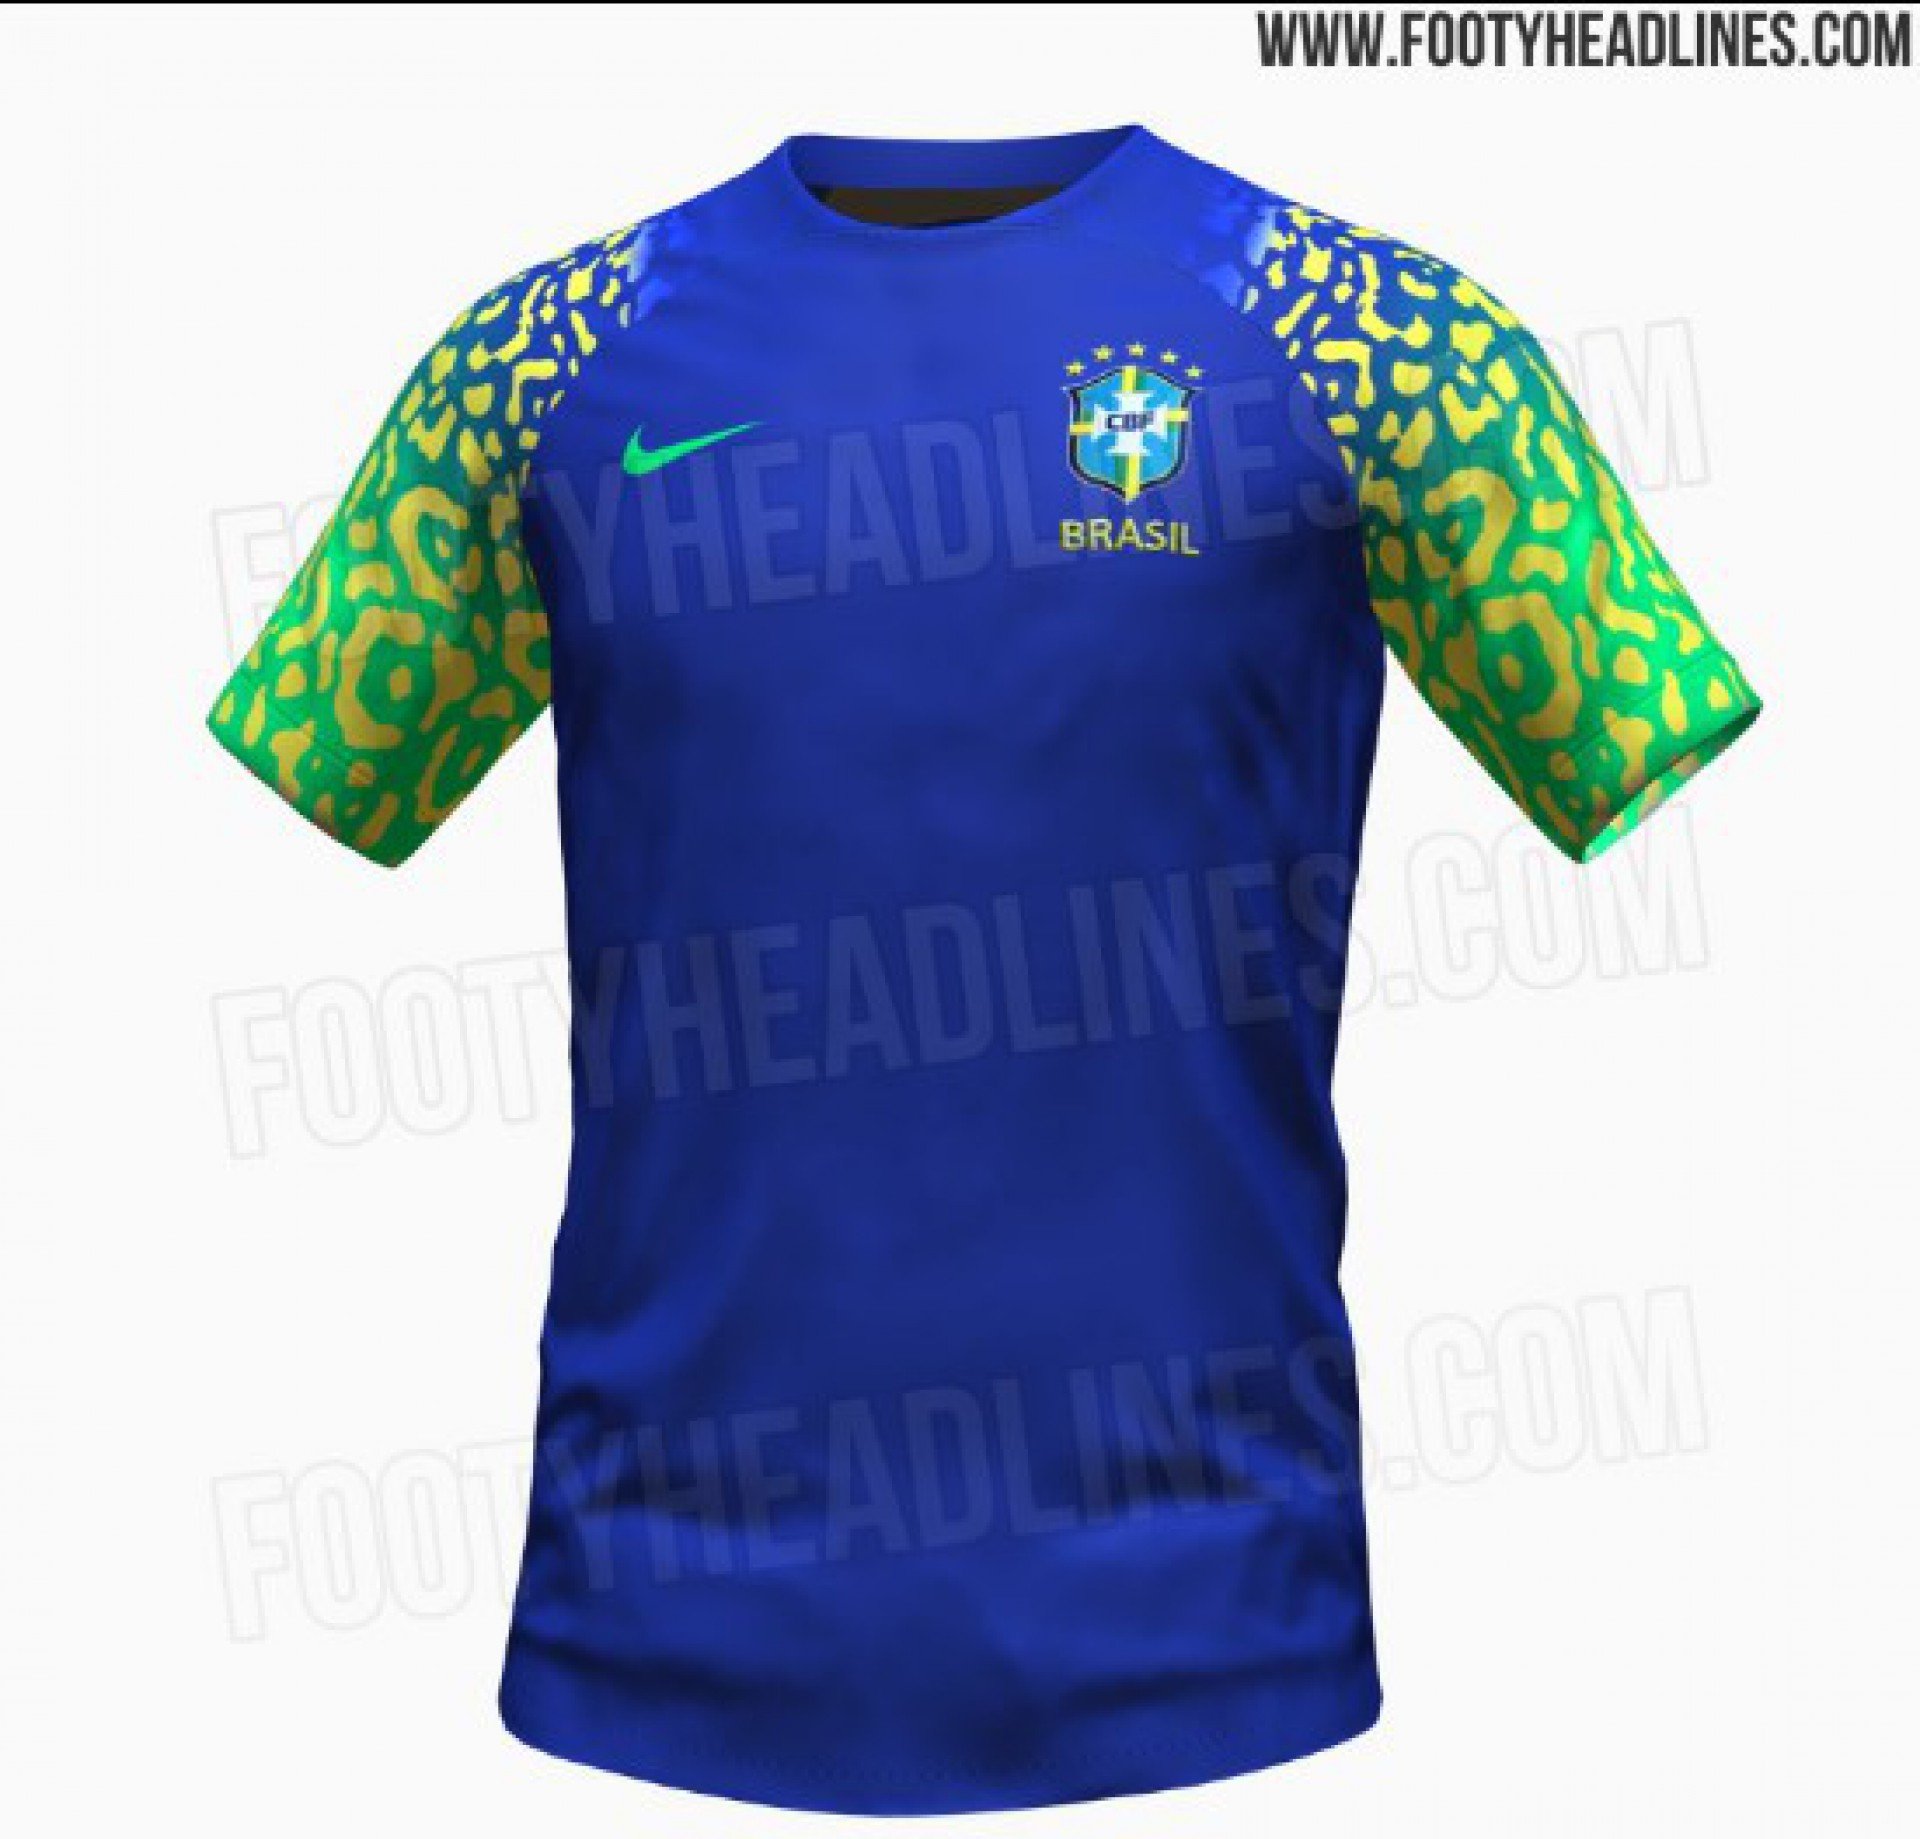 Possível segundo uniforme da Seleção Brasileira para a Copa do Mundo de 2022 - Reprodução/Footy Headlines